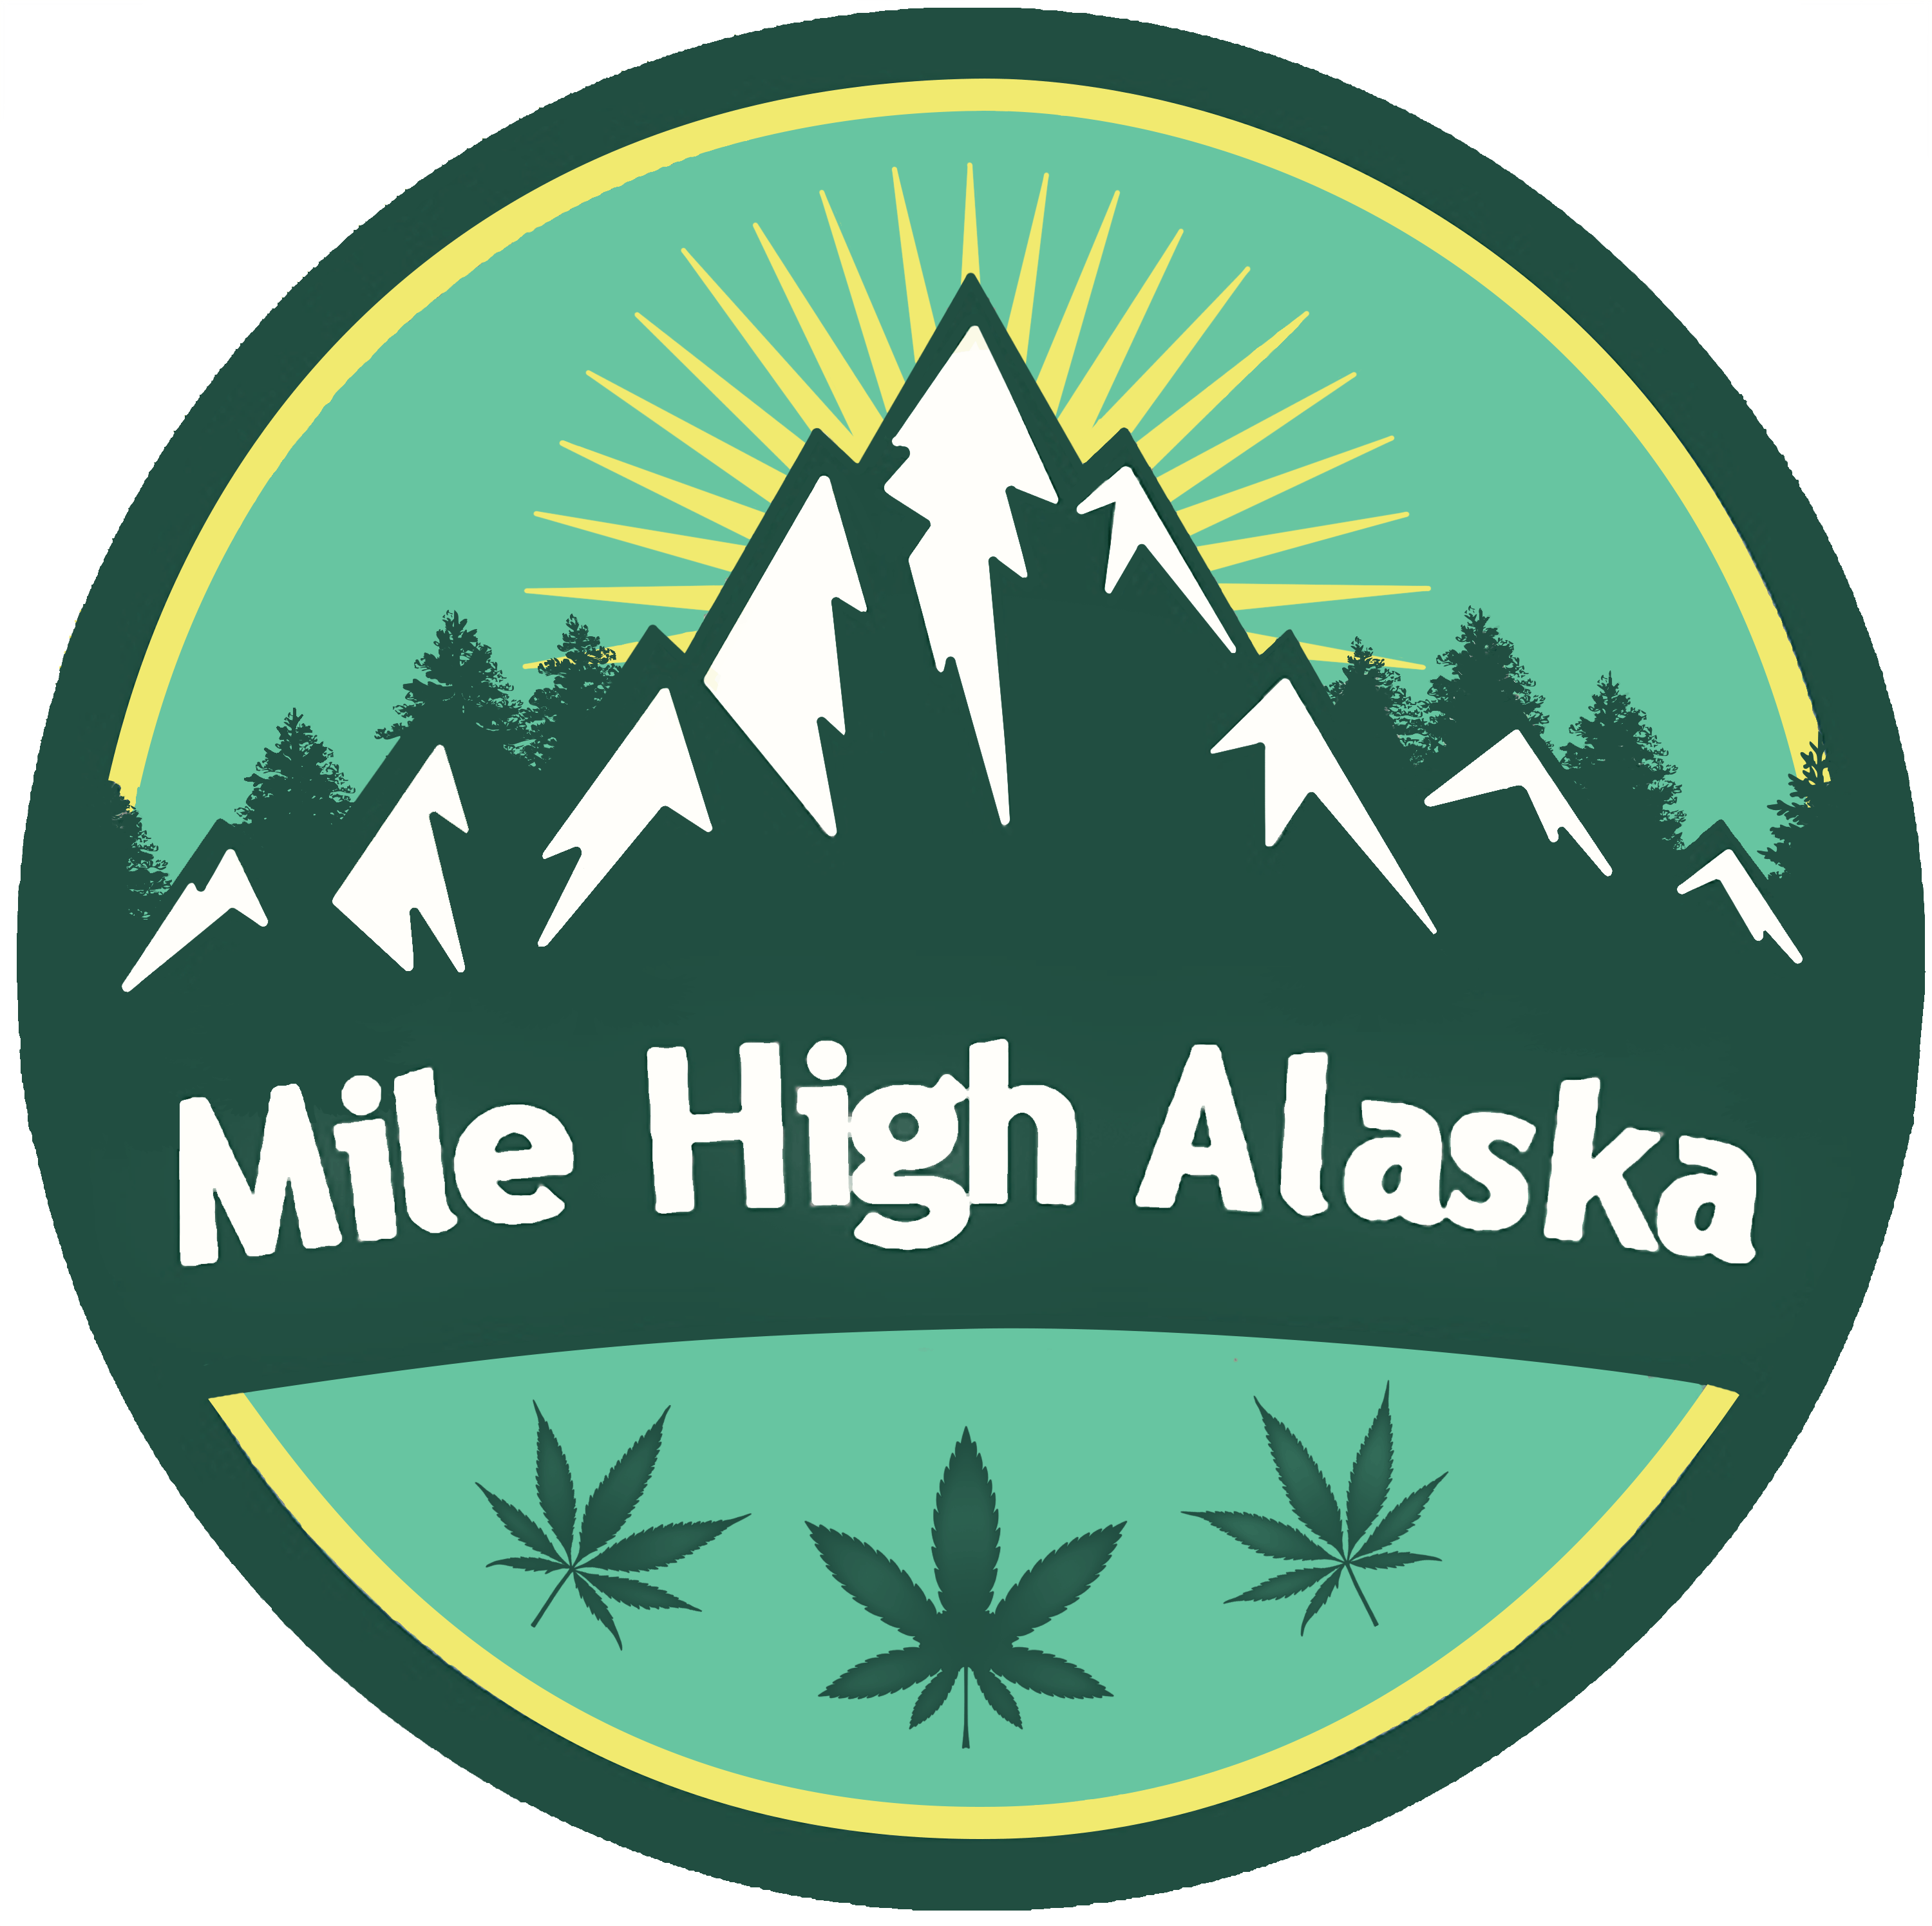 Mile High Alaska